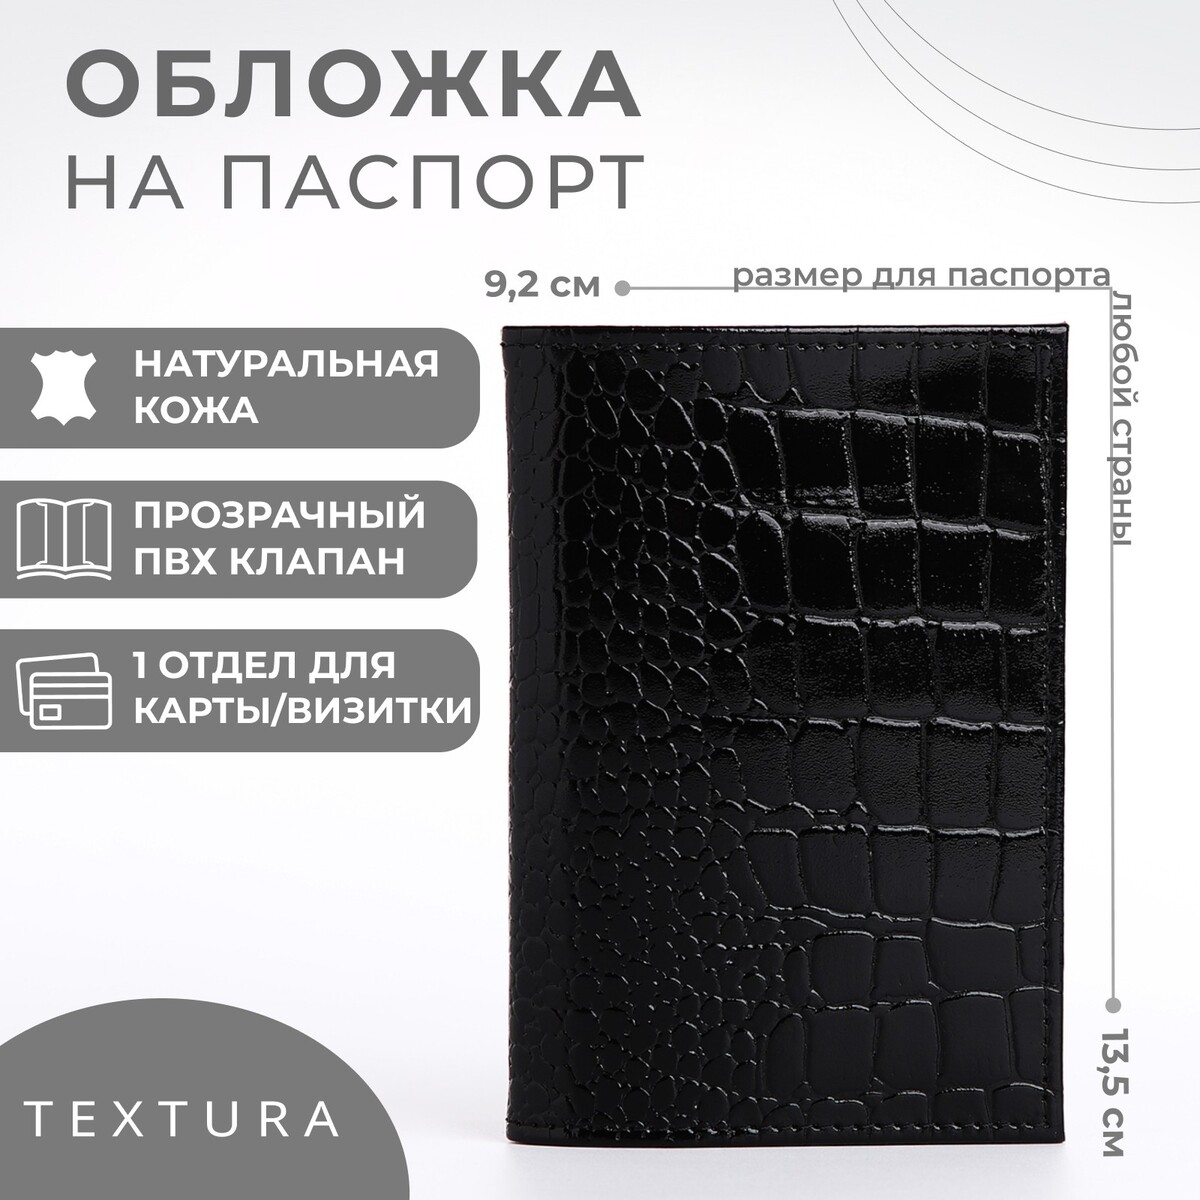 Обложка для паспорта textura, цвет черный TEXTURA